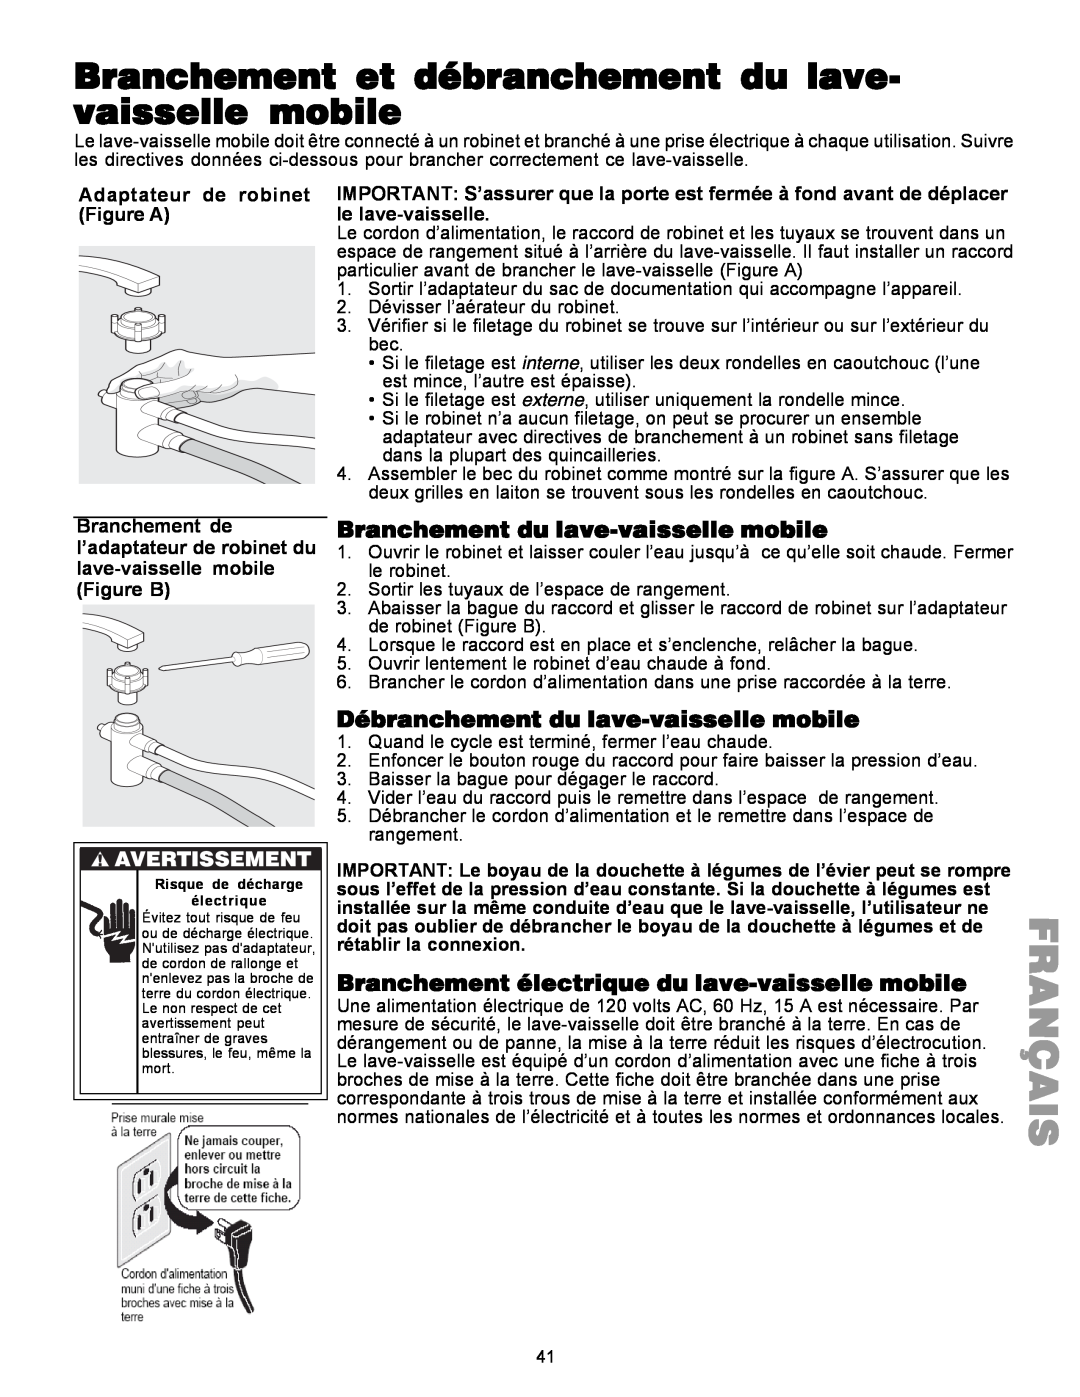 Kenmore 587.1441 manual Branchement du lave-vaissellemobile, Débranchement du lave-vaissellemobile, Français, Figure A 